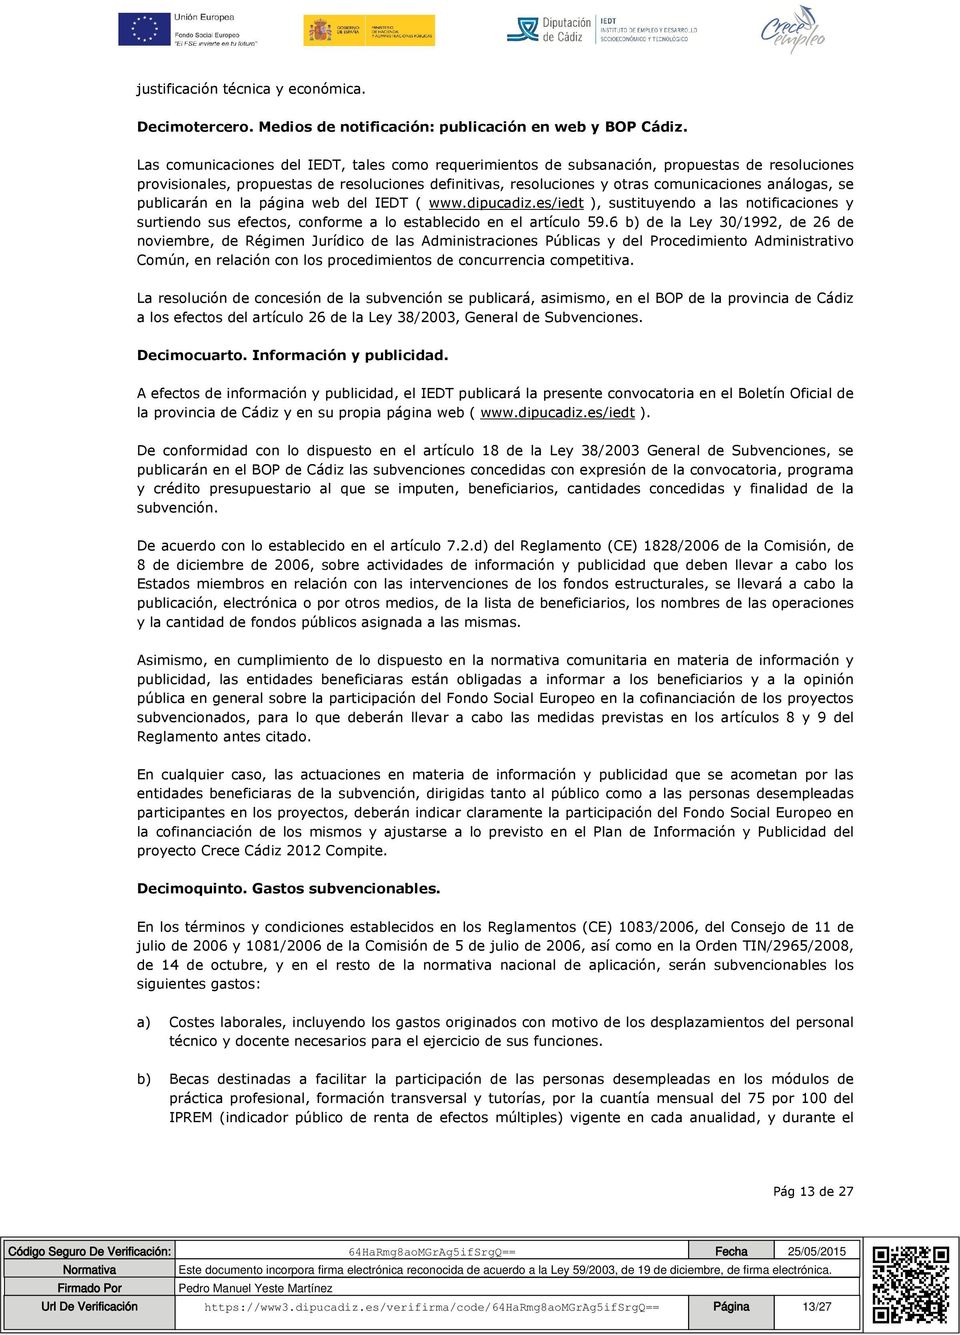 se publicarán en la página web del IEDT ( www.dipucadiz.es/iedt ), sustituyendo a las notificaciones y surtiendo sus efectos, conforme a lo establecido en el artículo 59.